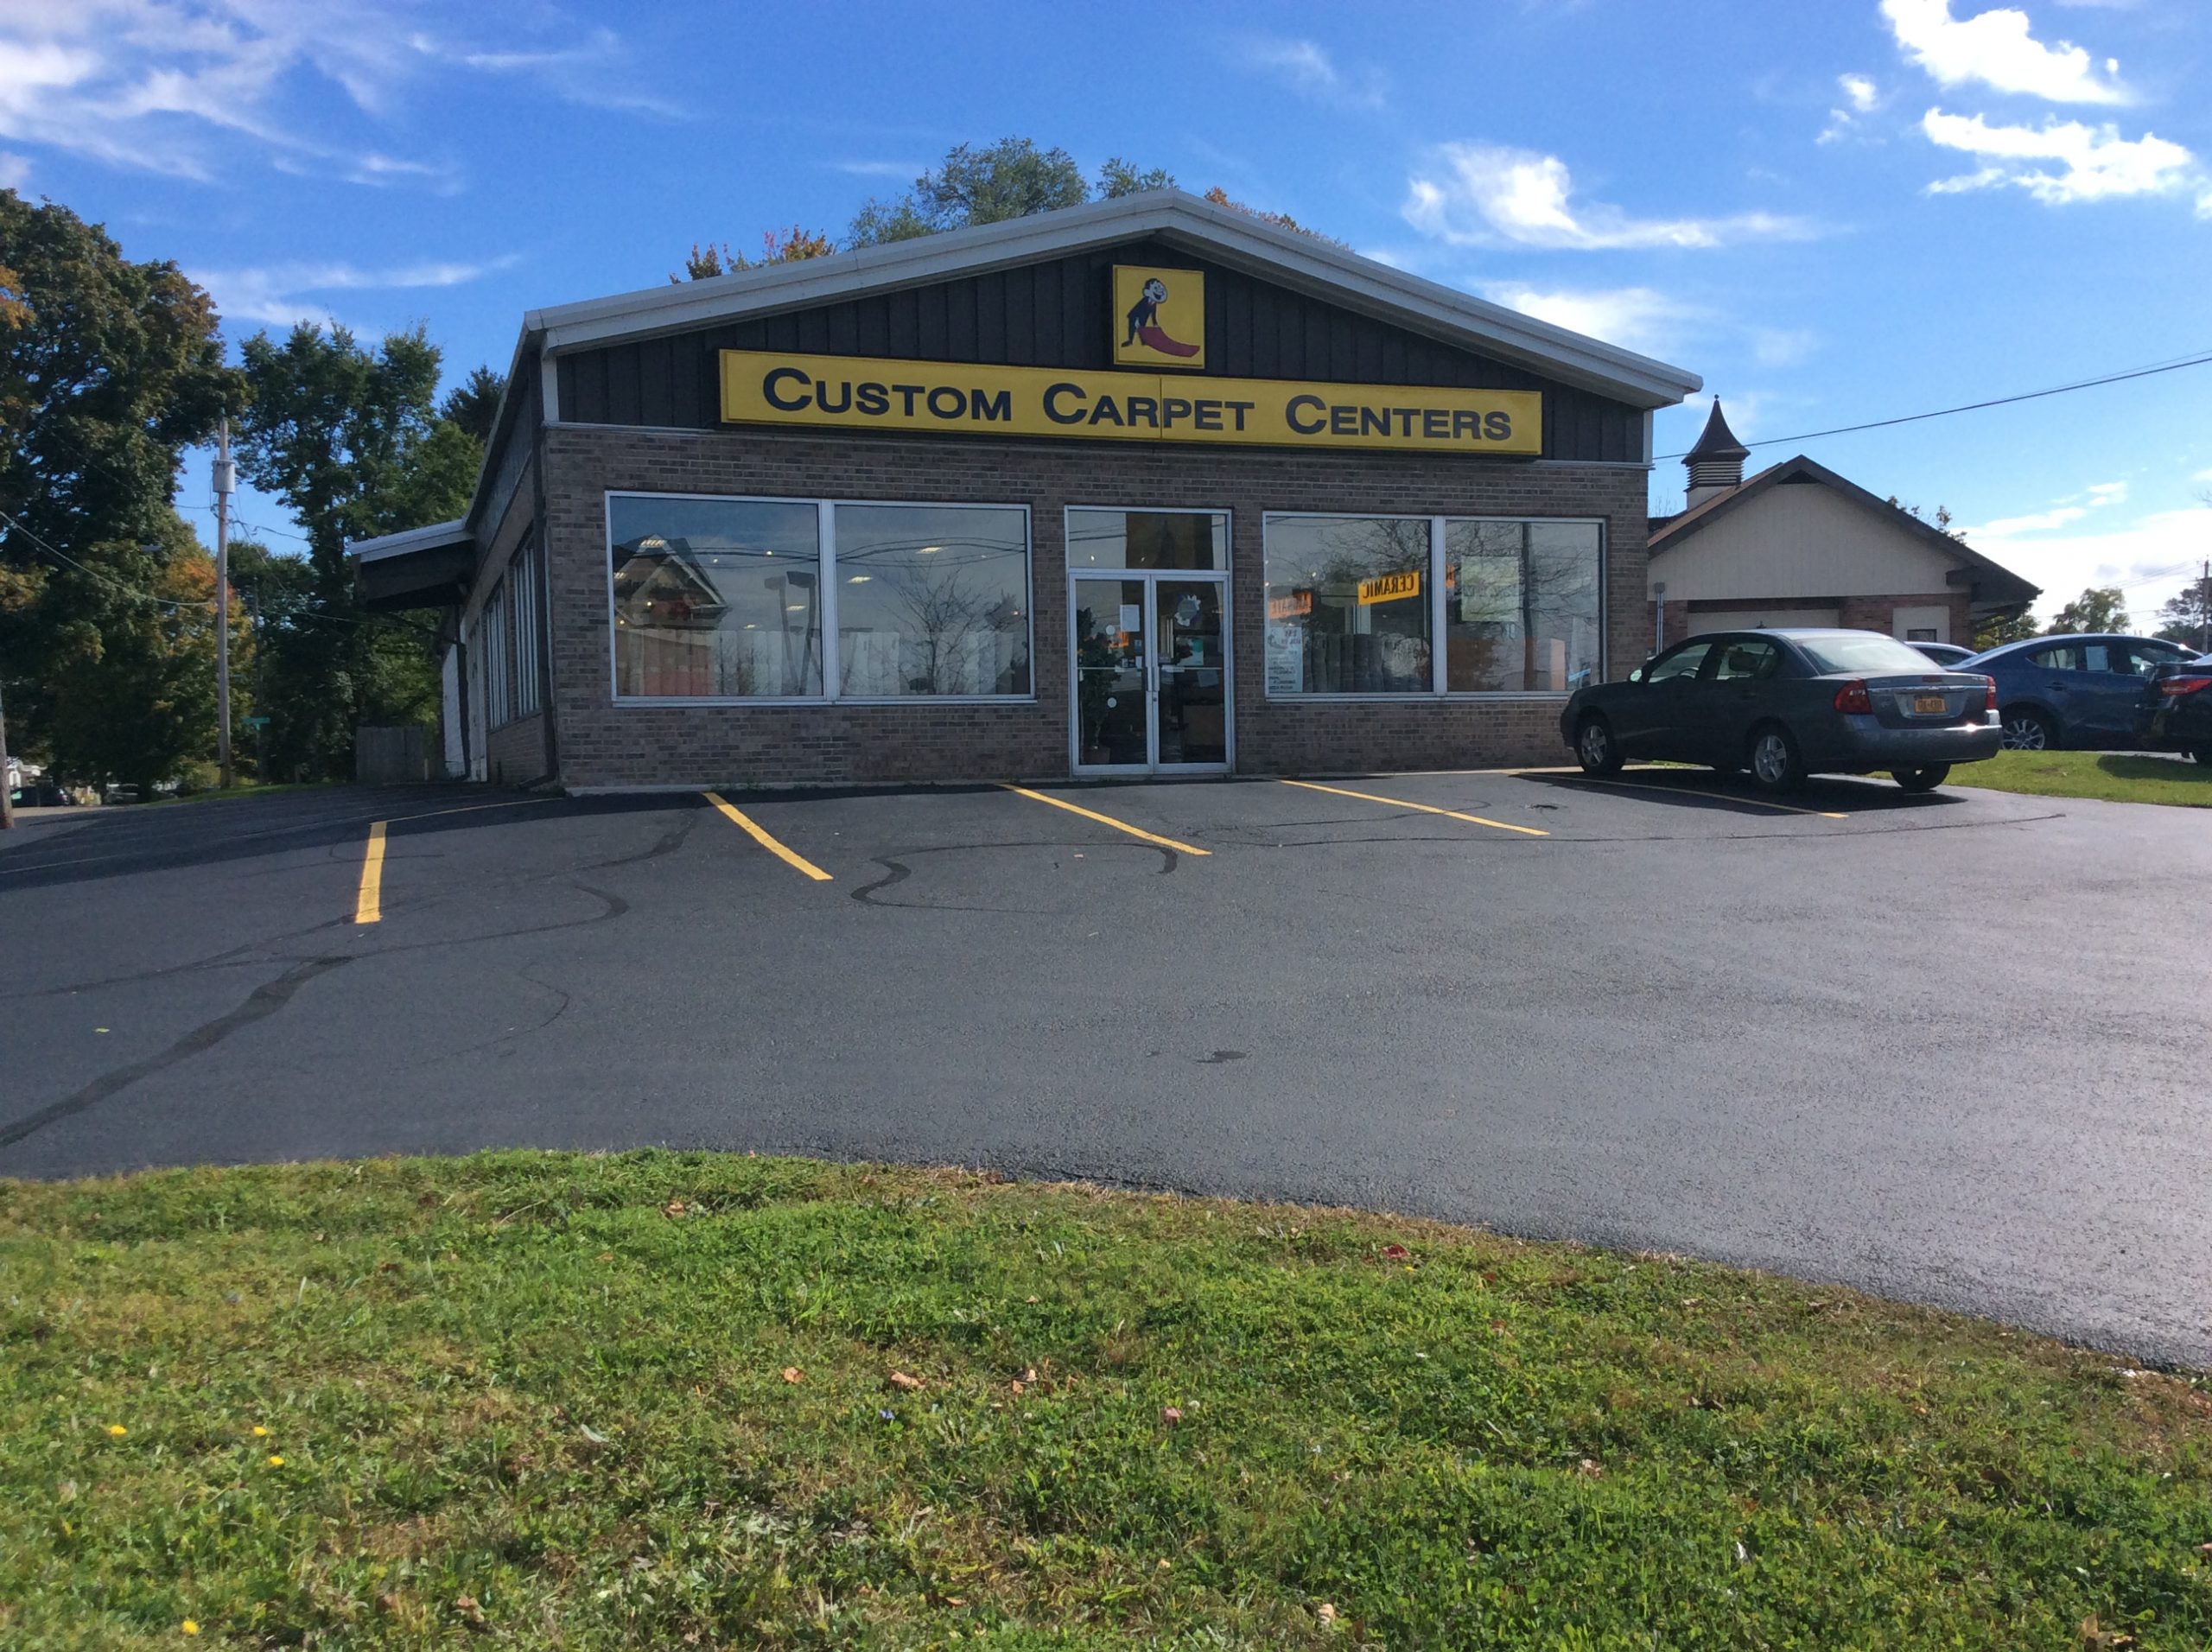 Custom Carpet Centers exterior view | Custom Carpet Centers